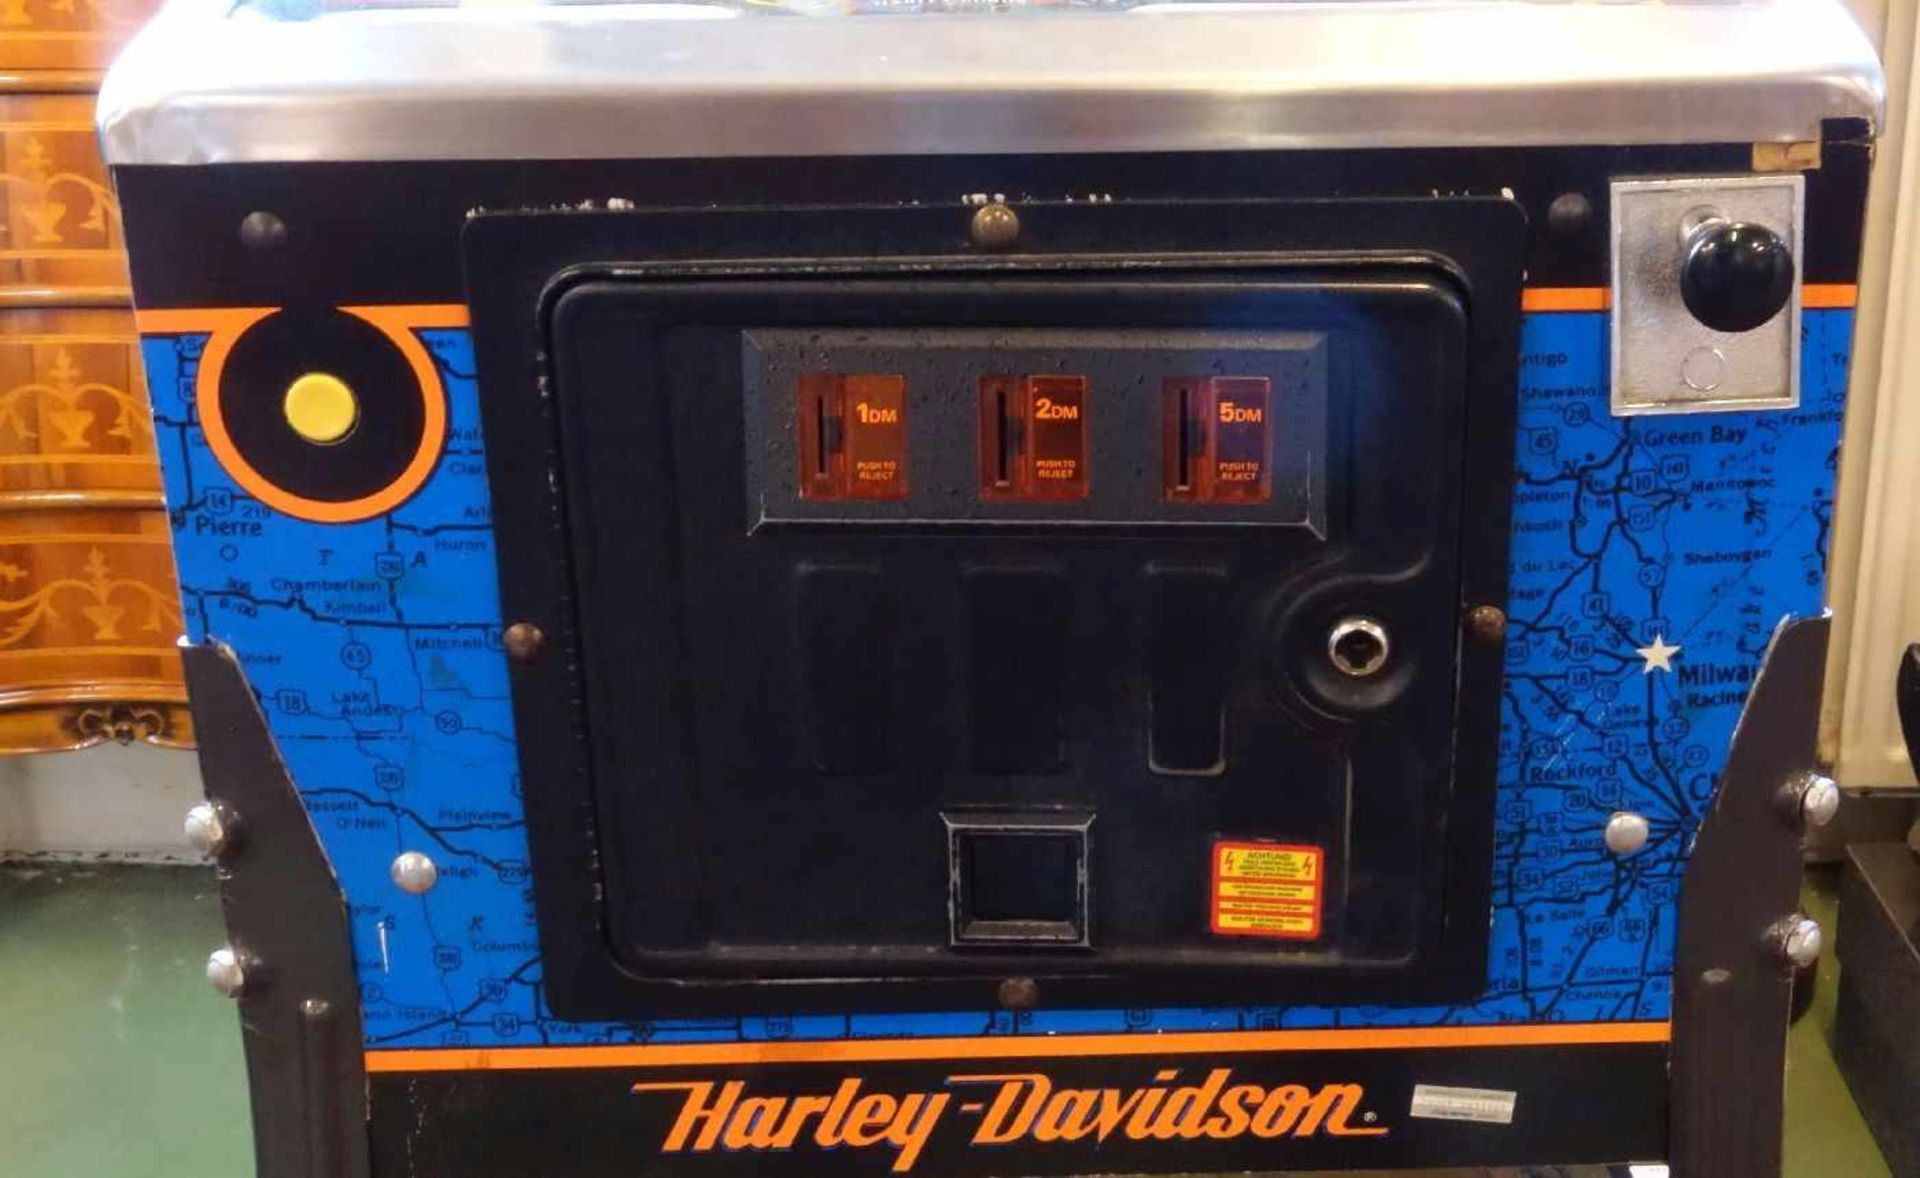 FLIPPERAUTOMAT / FLIPPER BALLY "HARLEY DAVIDSON" / pinball, aus dem Jahre 1991, Manufaktur Bally. - Bild 9 aus 14